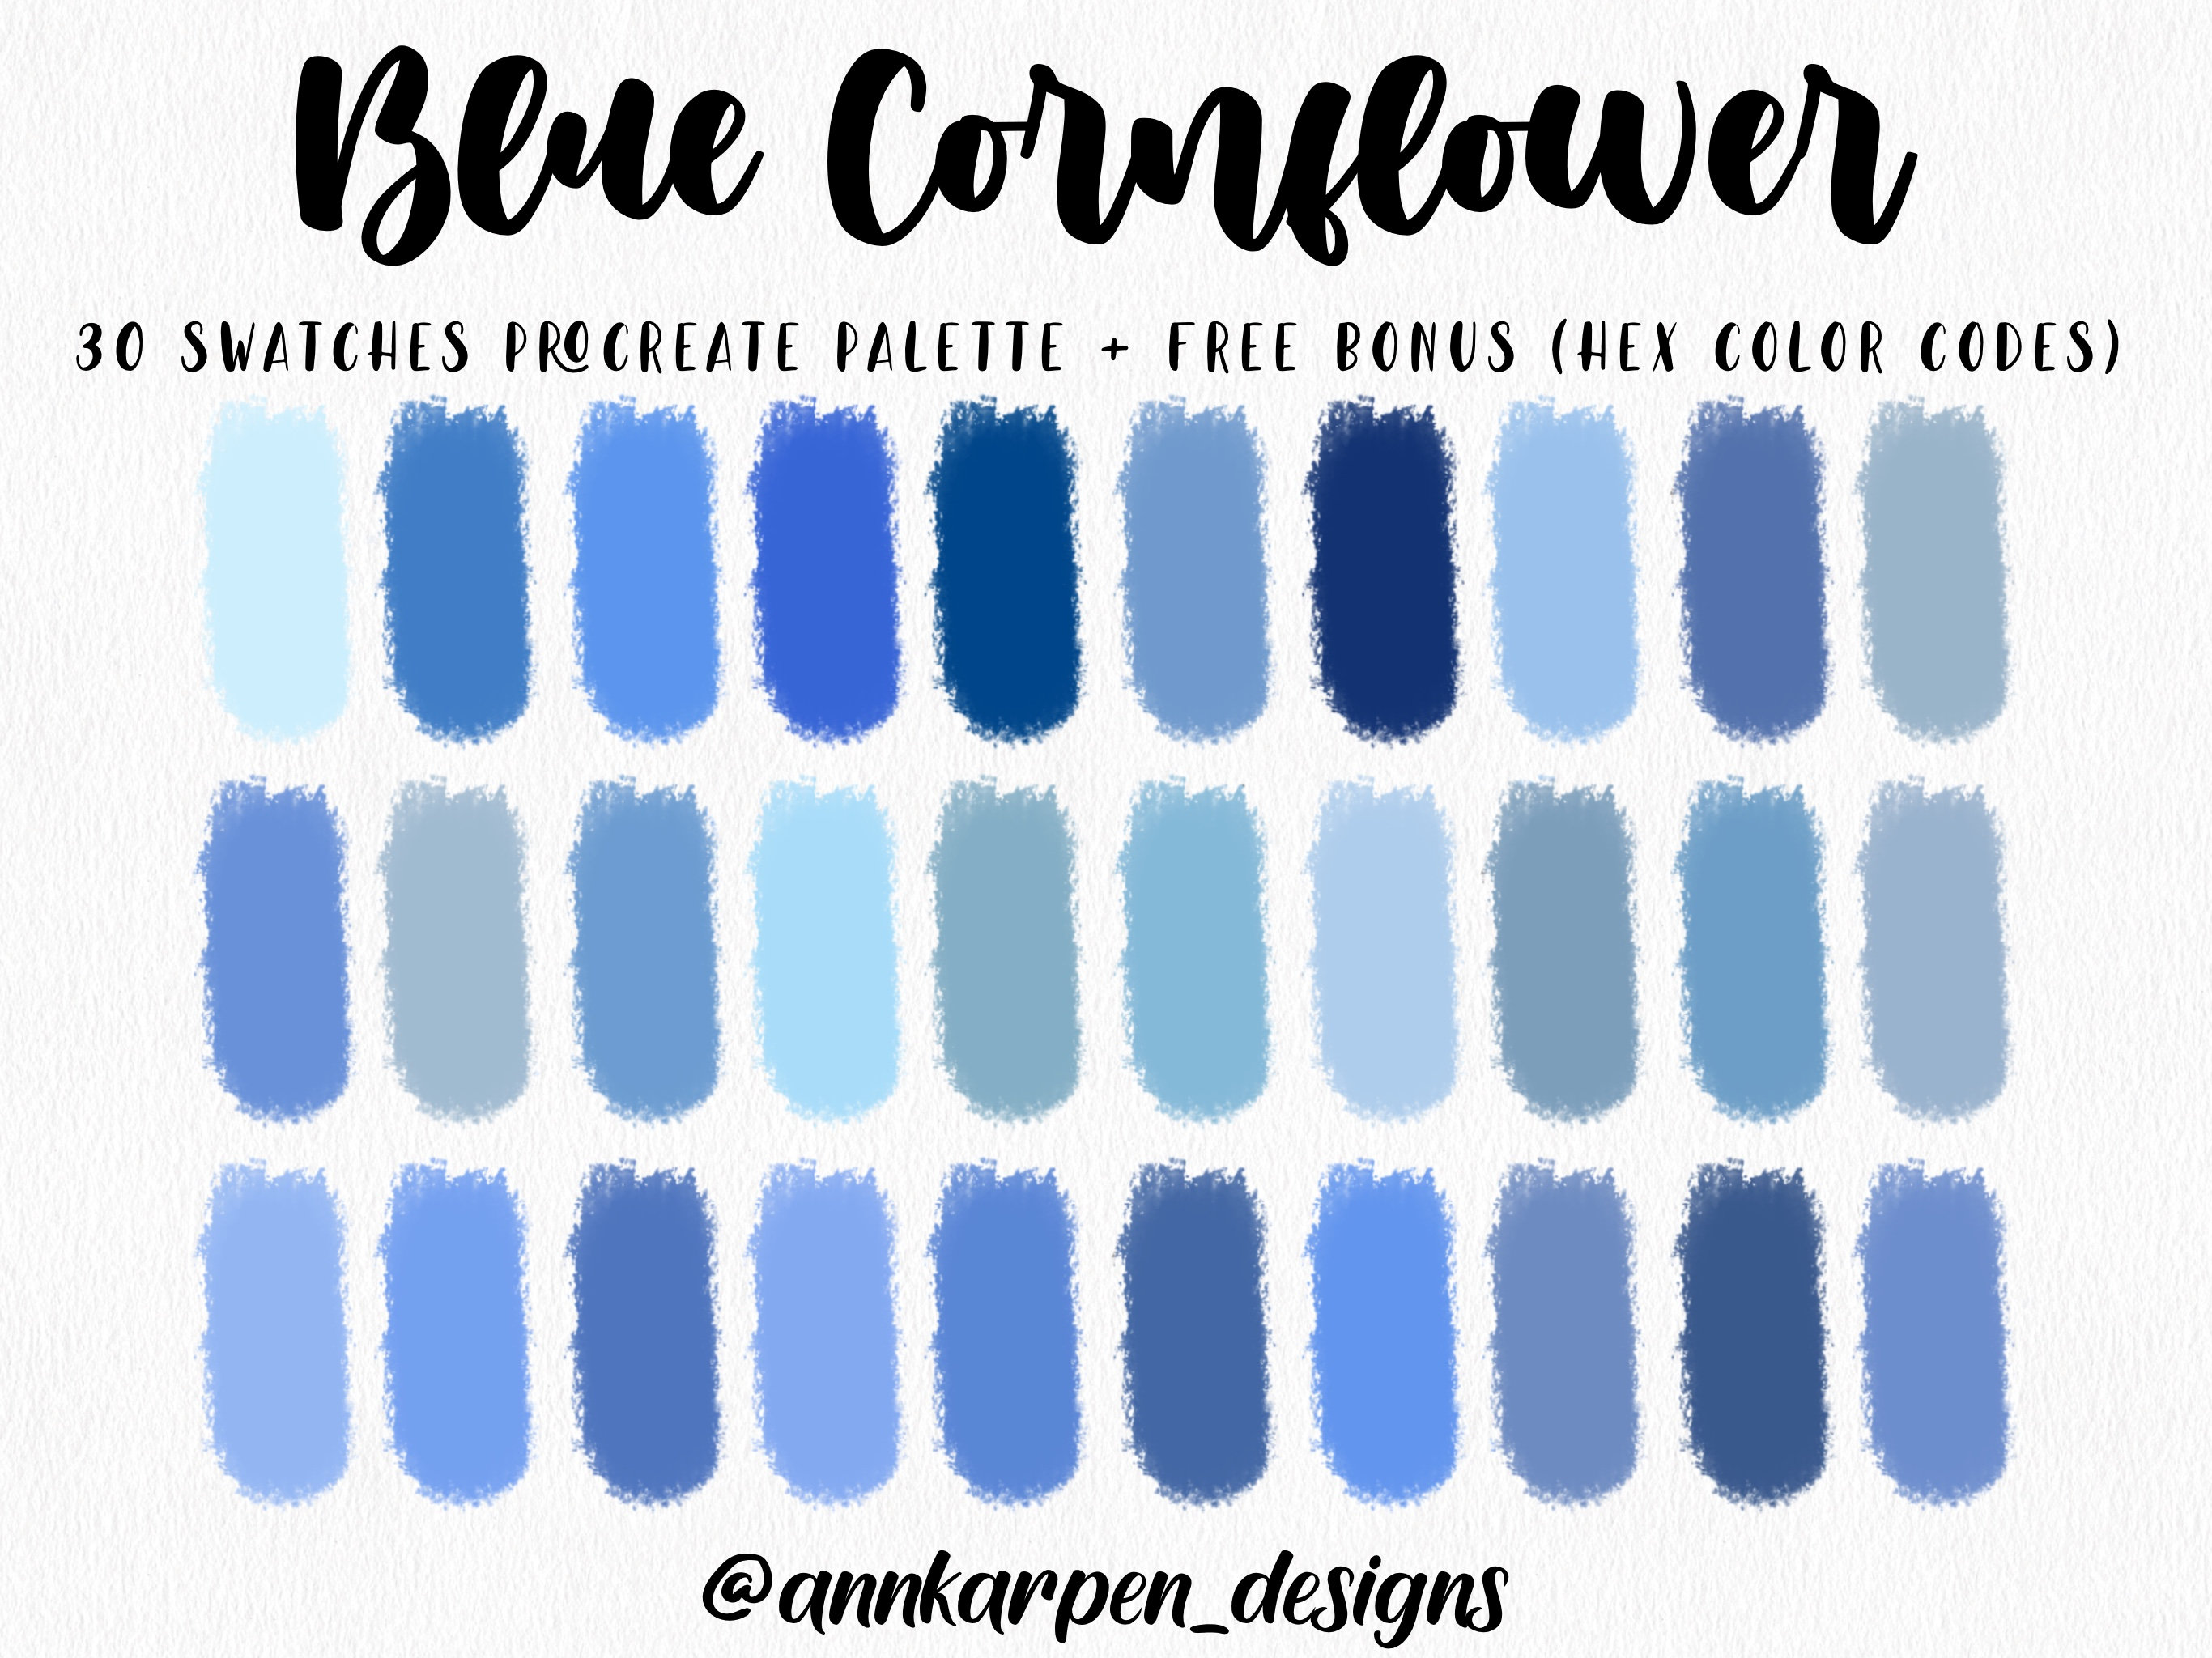 10. "Cornflower Blue" - wide 5